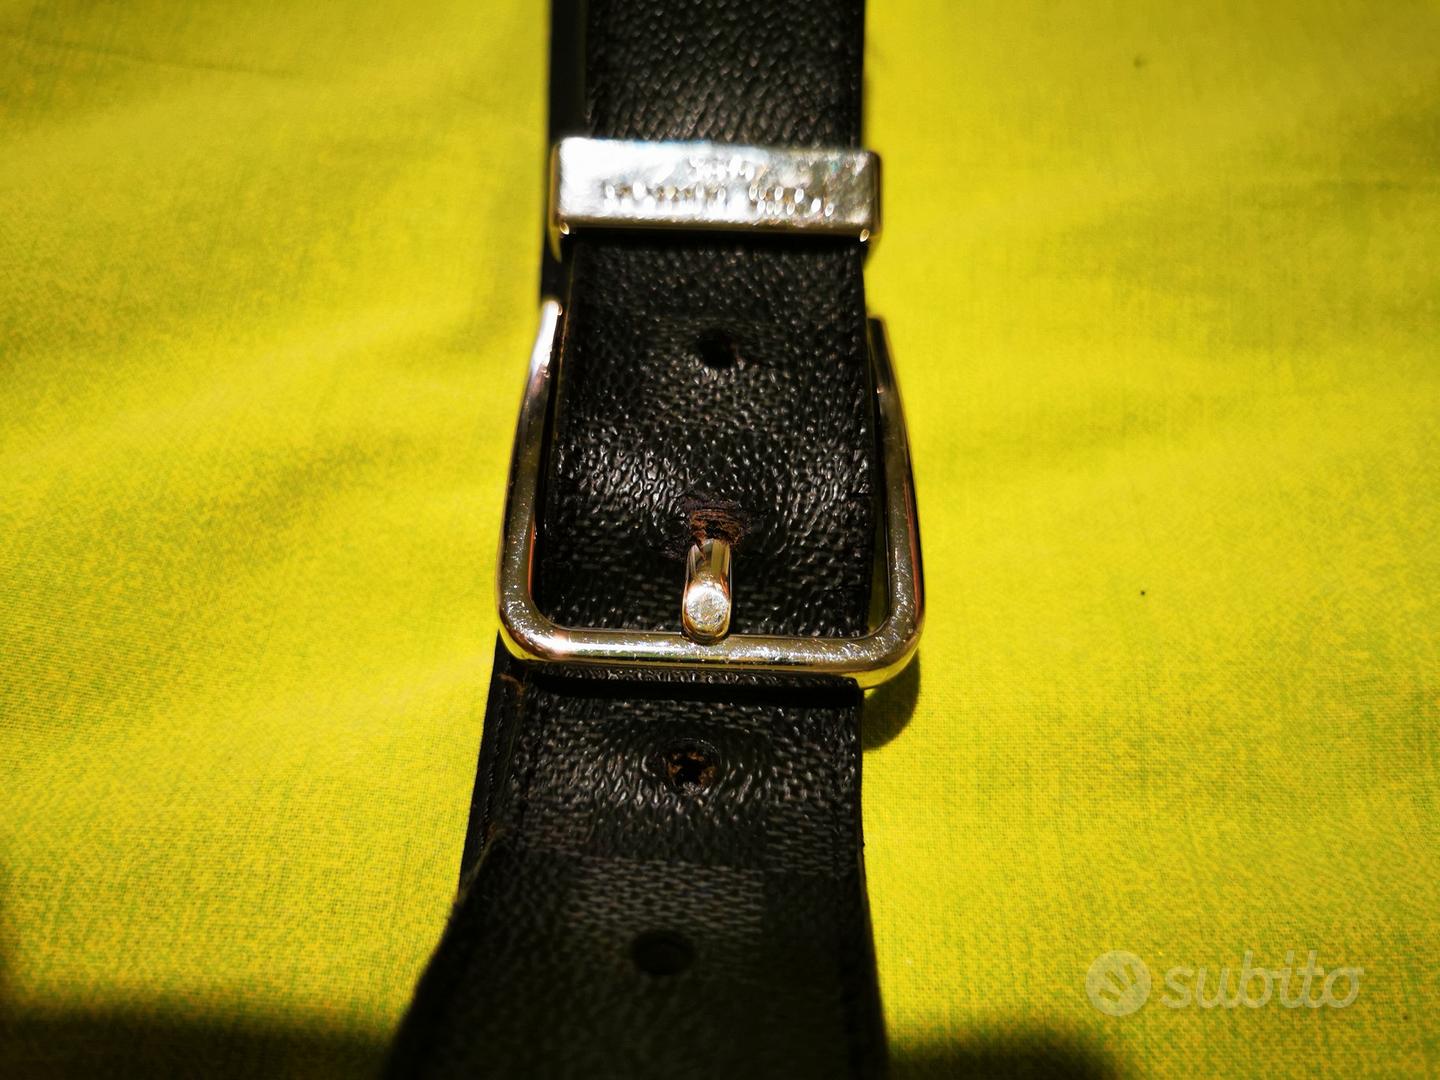 Cintura louis vuitton nera con logo oro - Abbigliamento e Accessori In  vendita a Roma